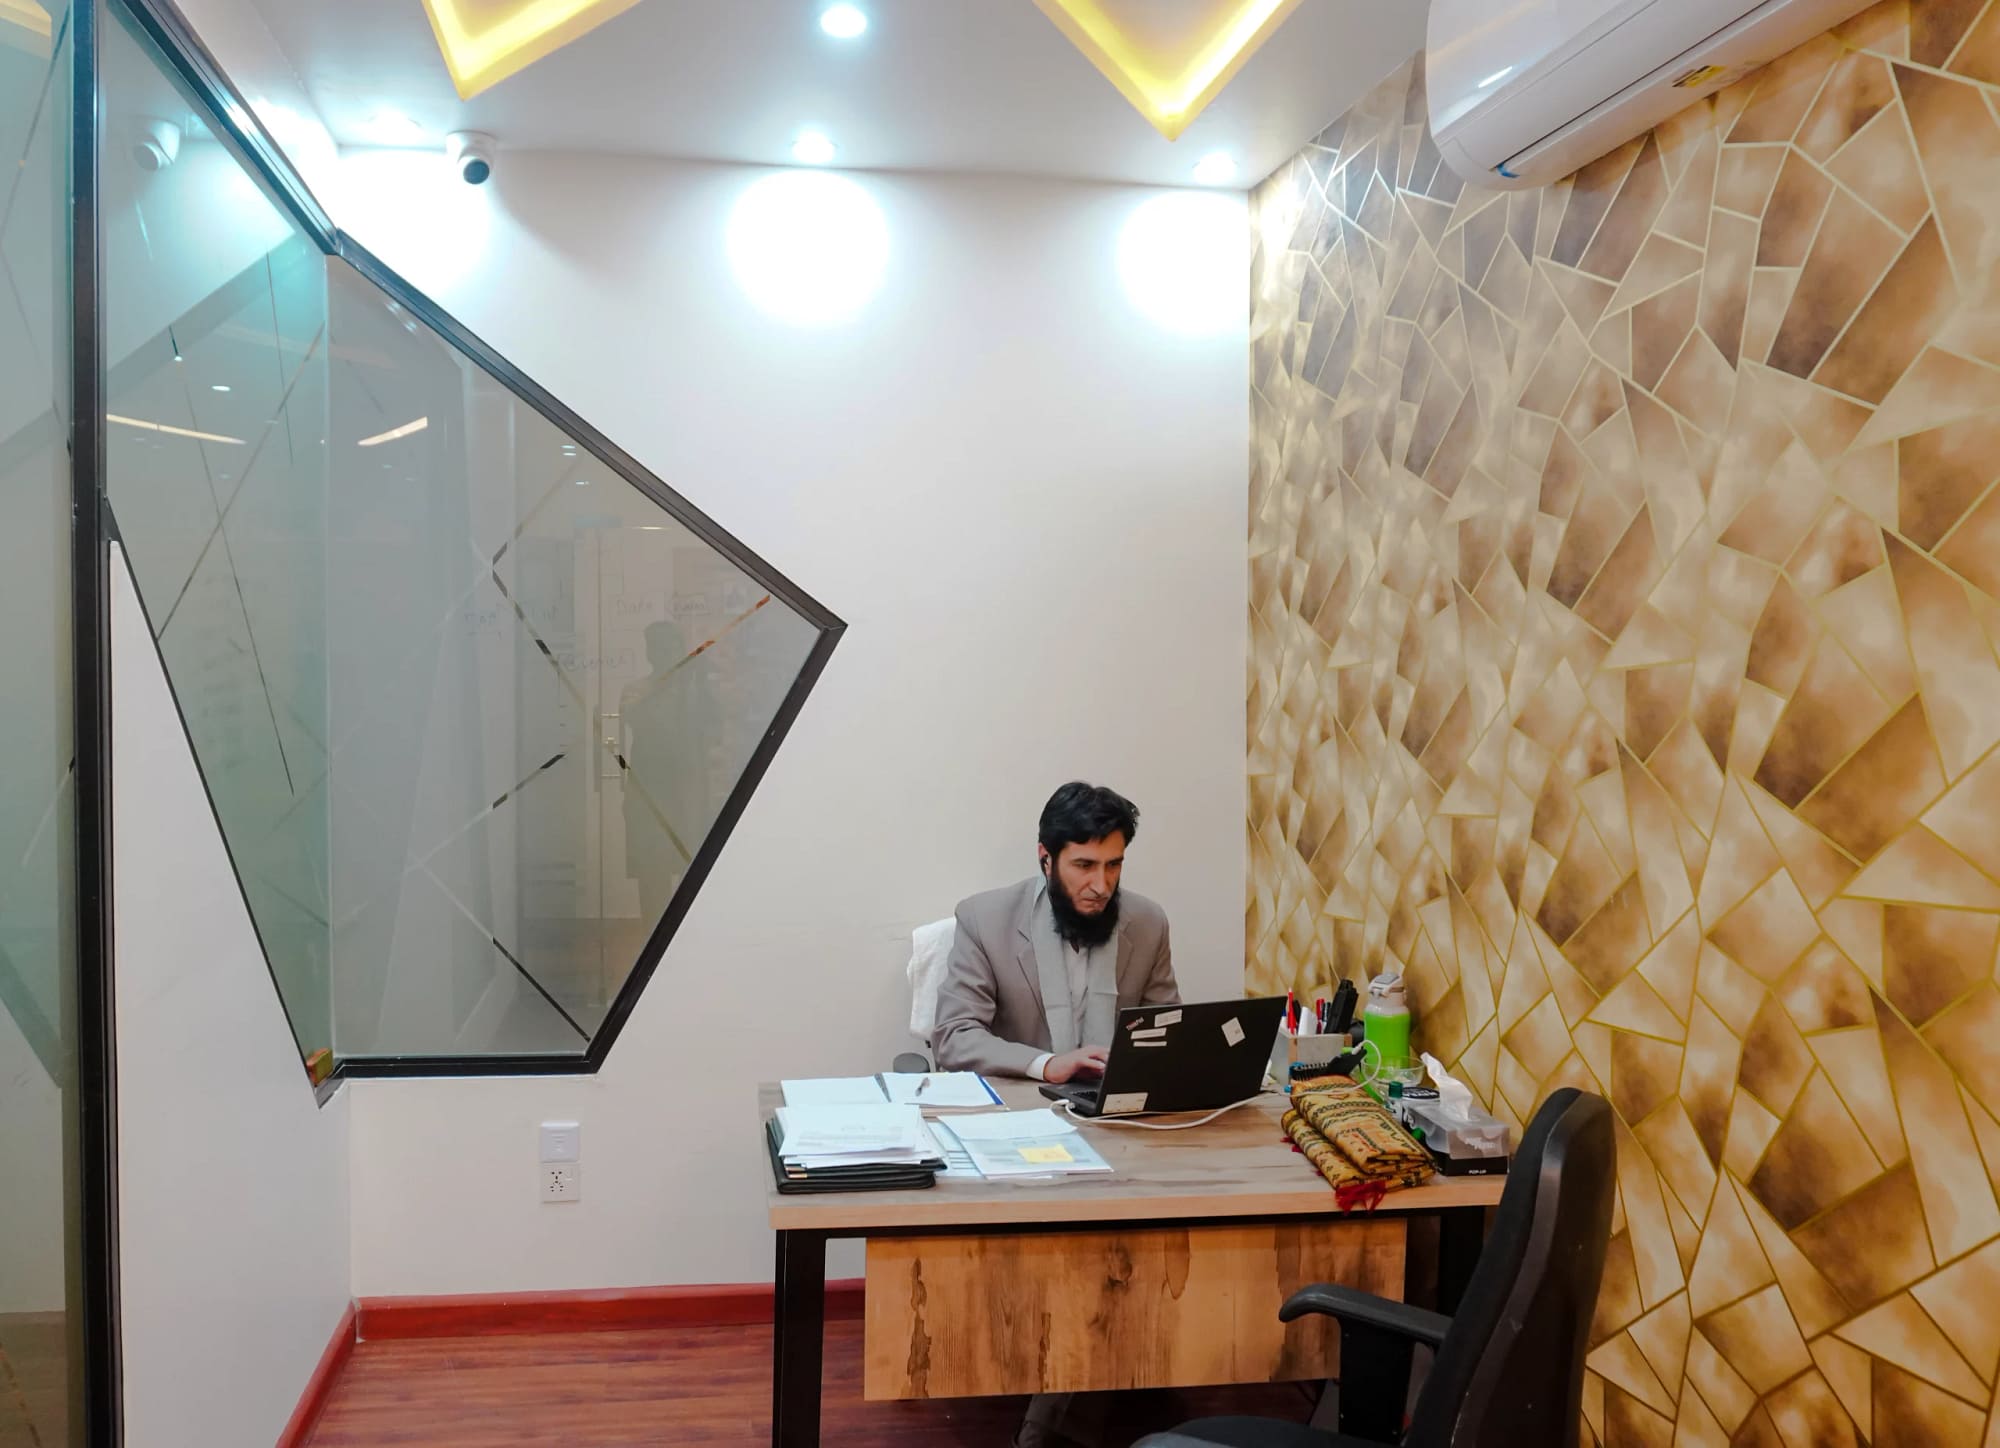 Hr Department head sir jhangeer is working in his office